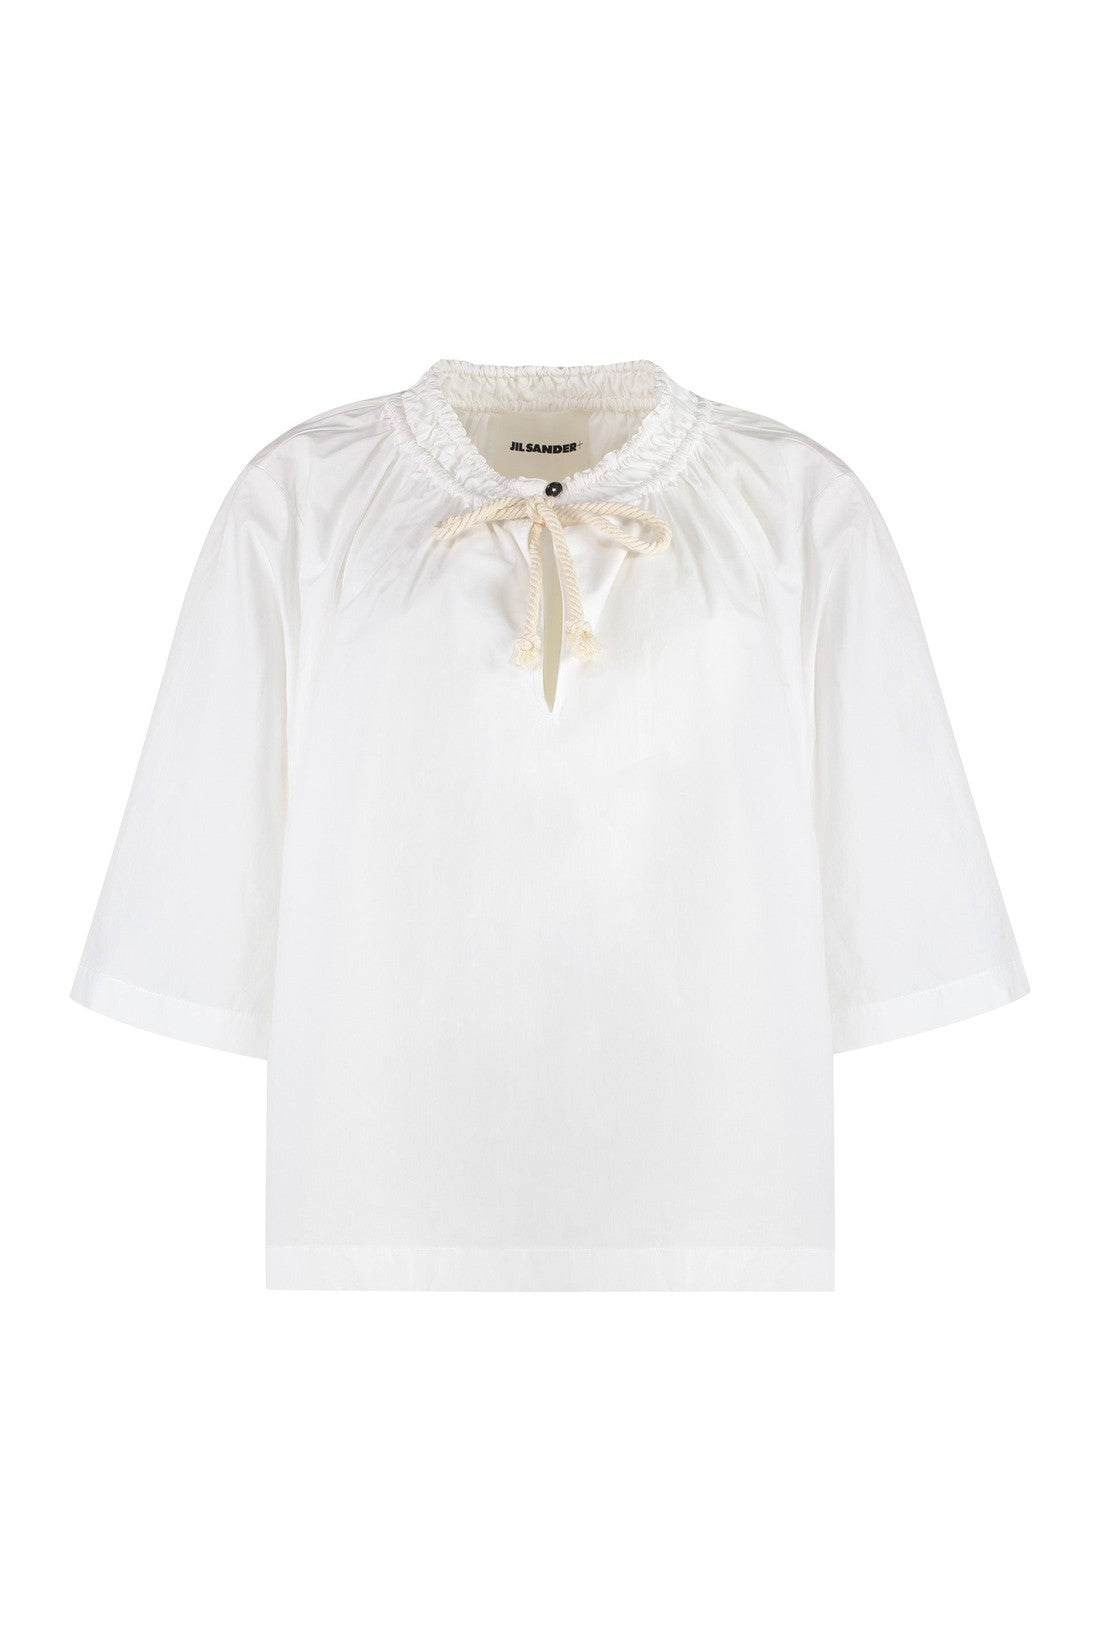 Jil Sander-OUTLET-SALE-Cotton blouse-ARCHIVIST